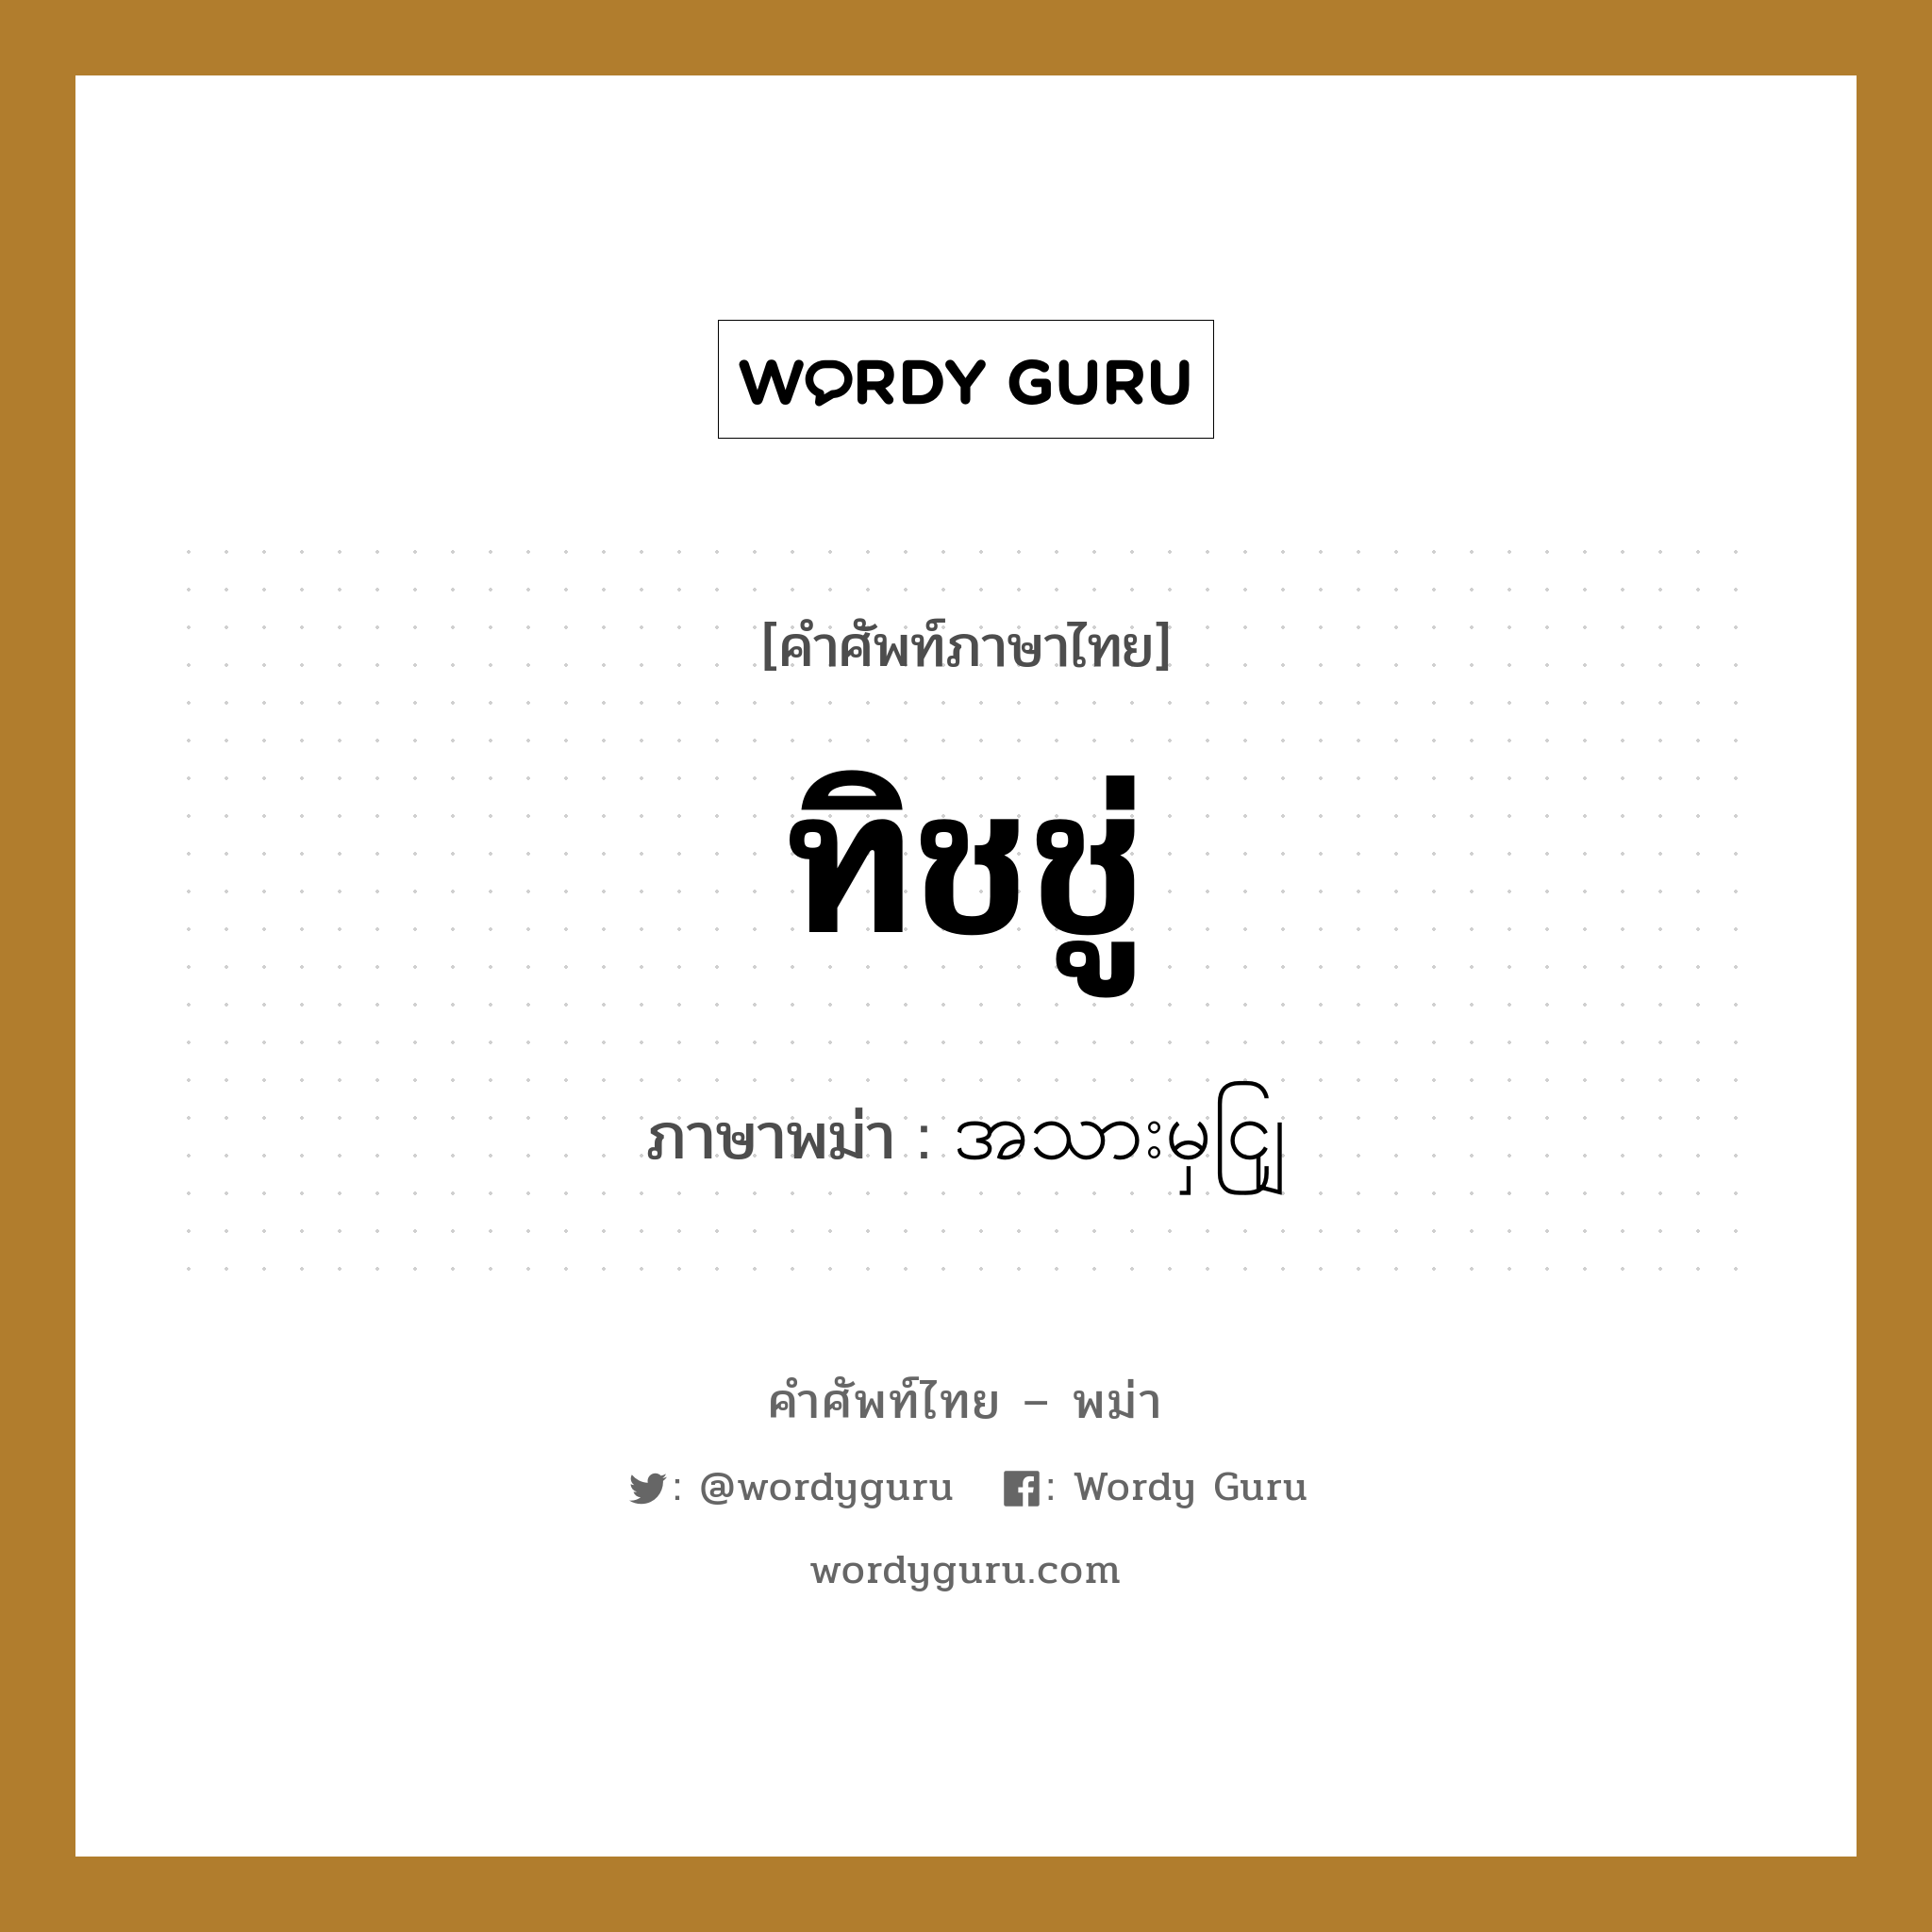 ทิชชู่ ภาษาพม่าคืออะไร, คำศัพท์ภาษาไทย - พม่า ทิชชู่ ภาษาพม่า အသားမှငျြ